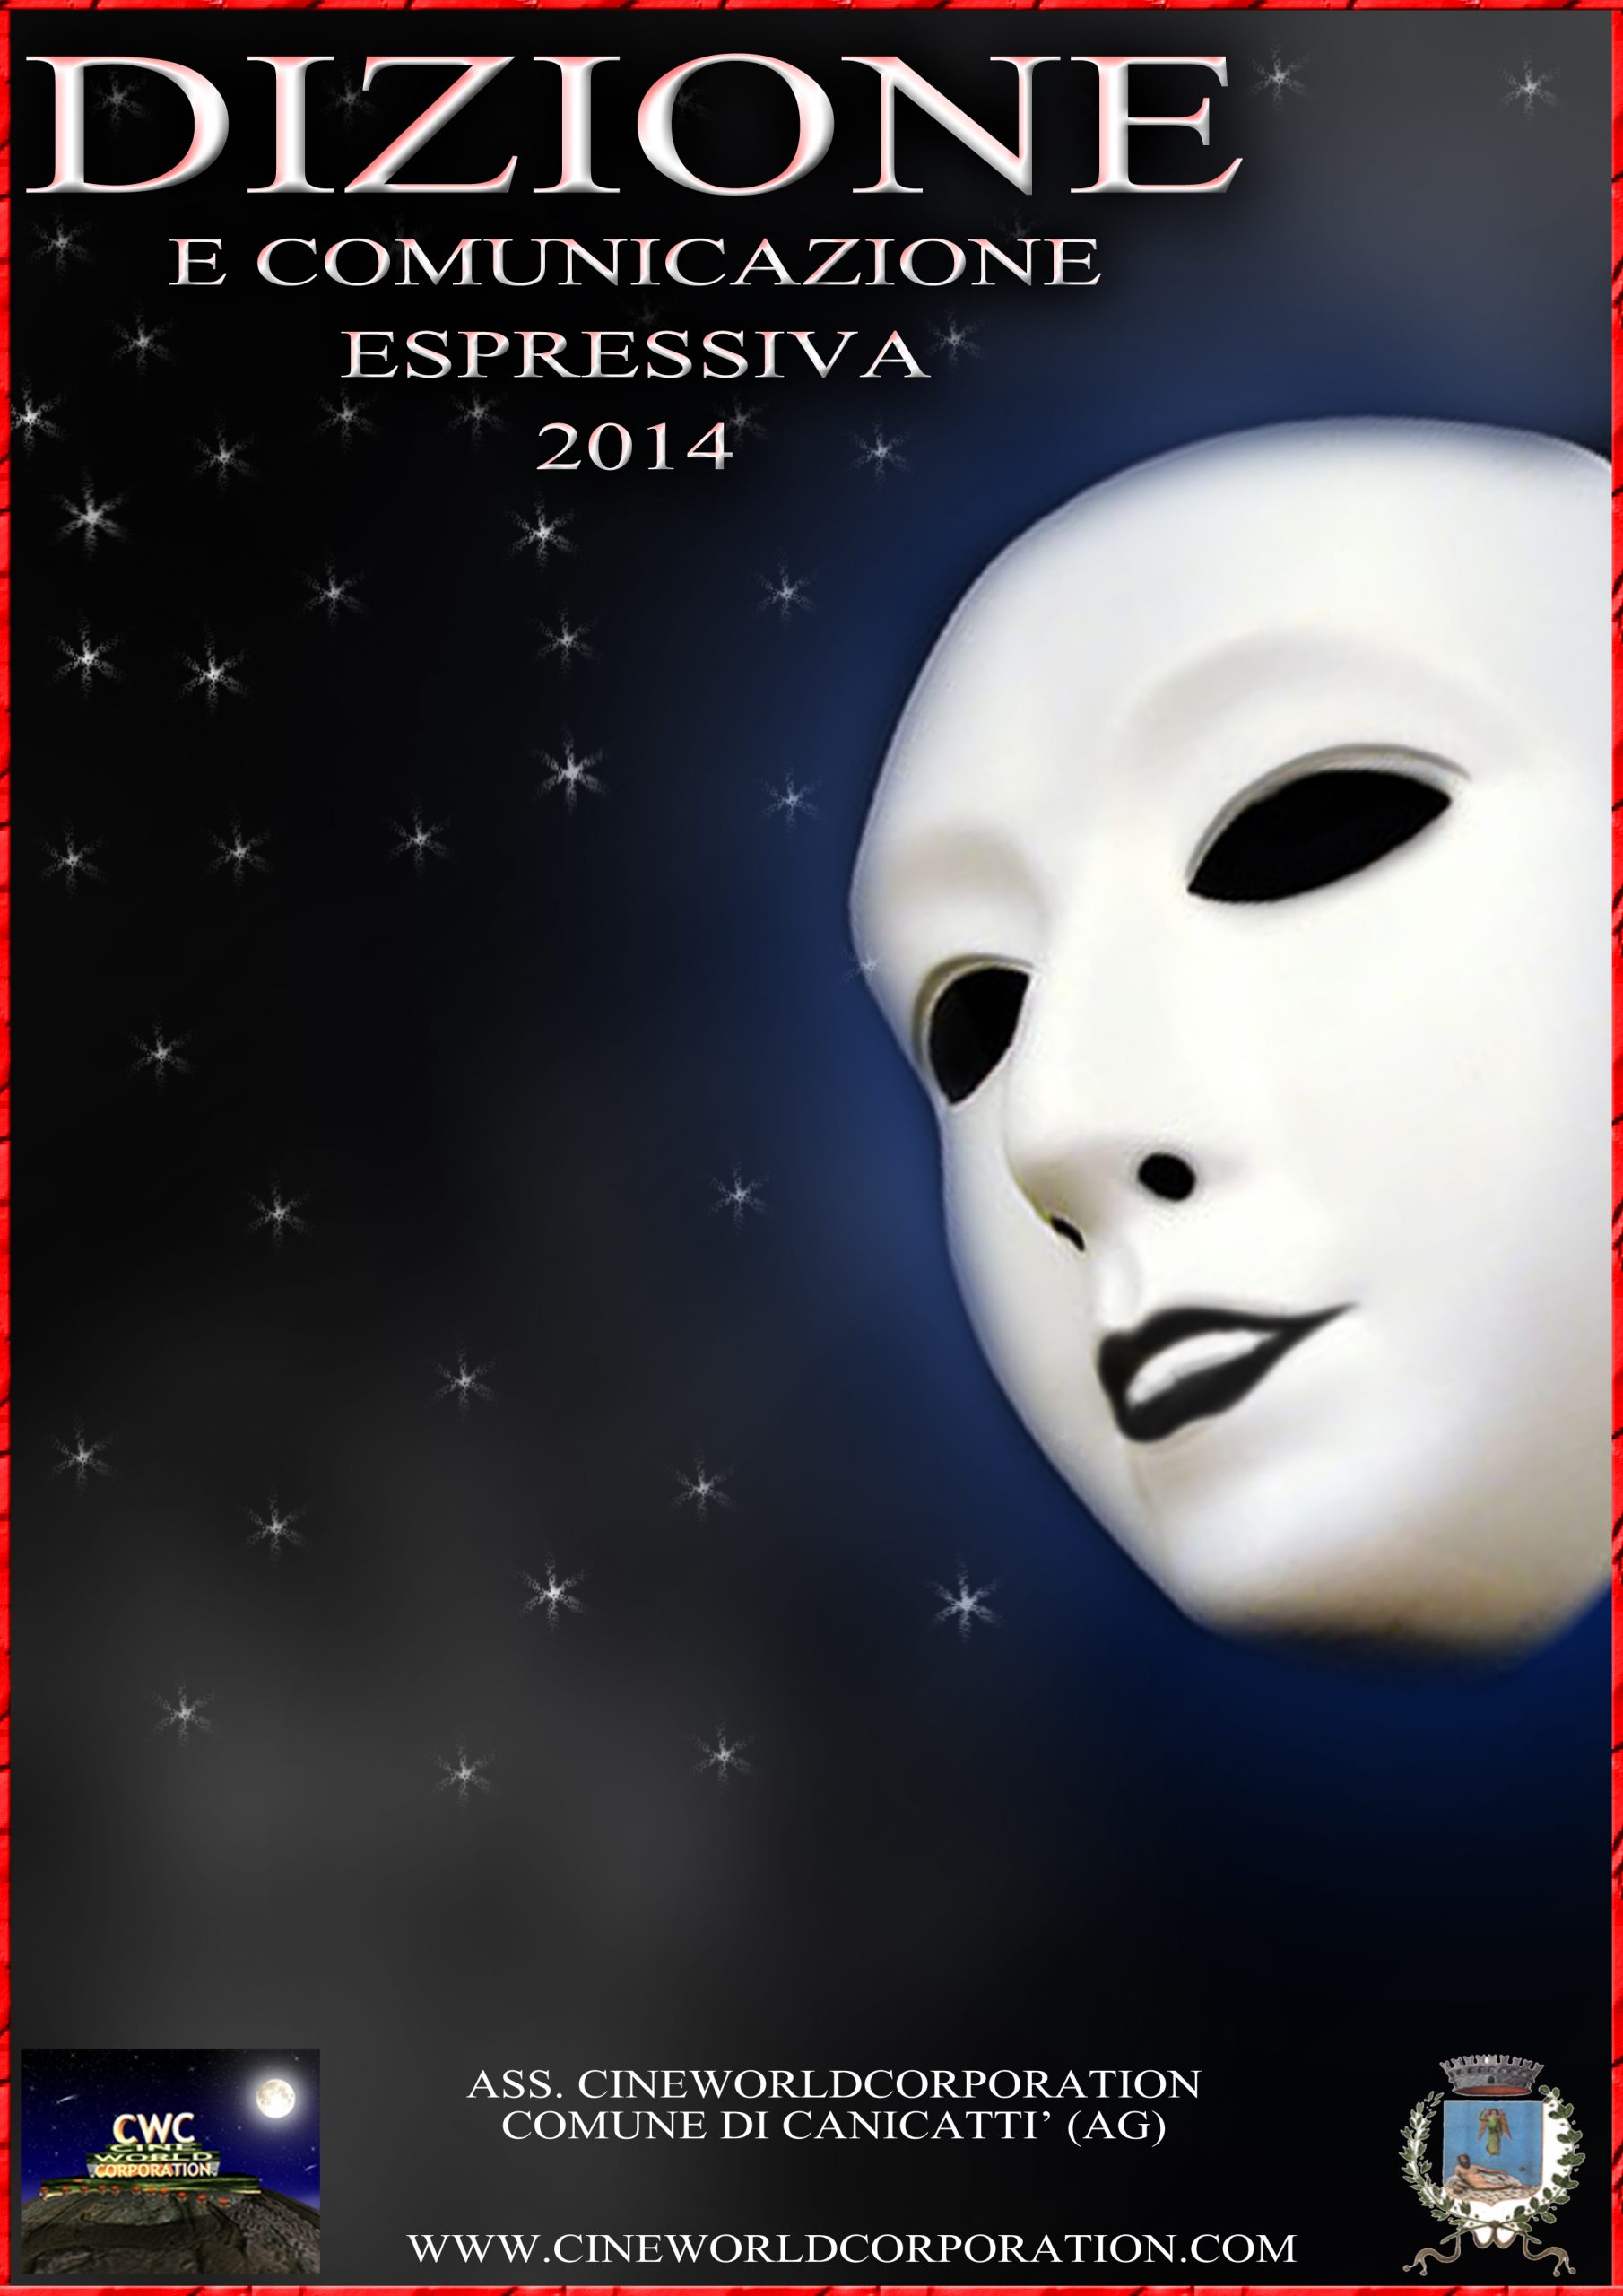 Canicattì, Cineworldcorporation: parte ufficialmente il corso di Dizione Espressiva 2014